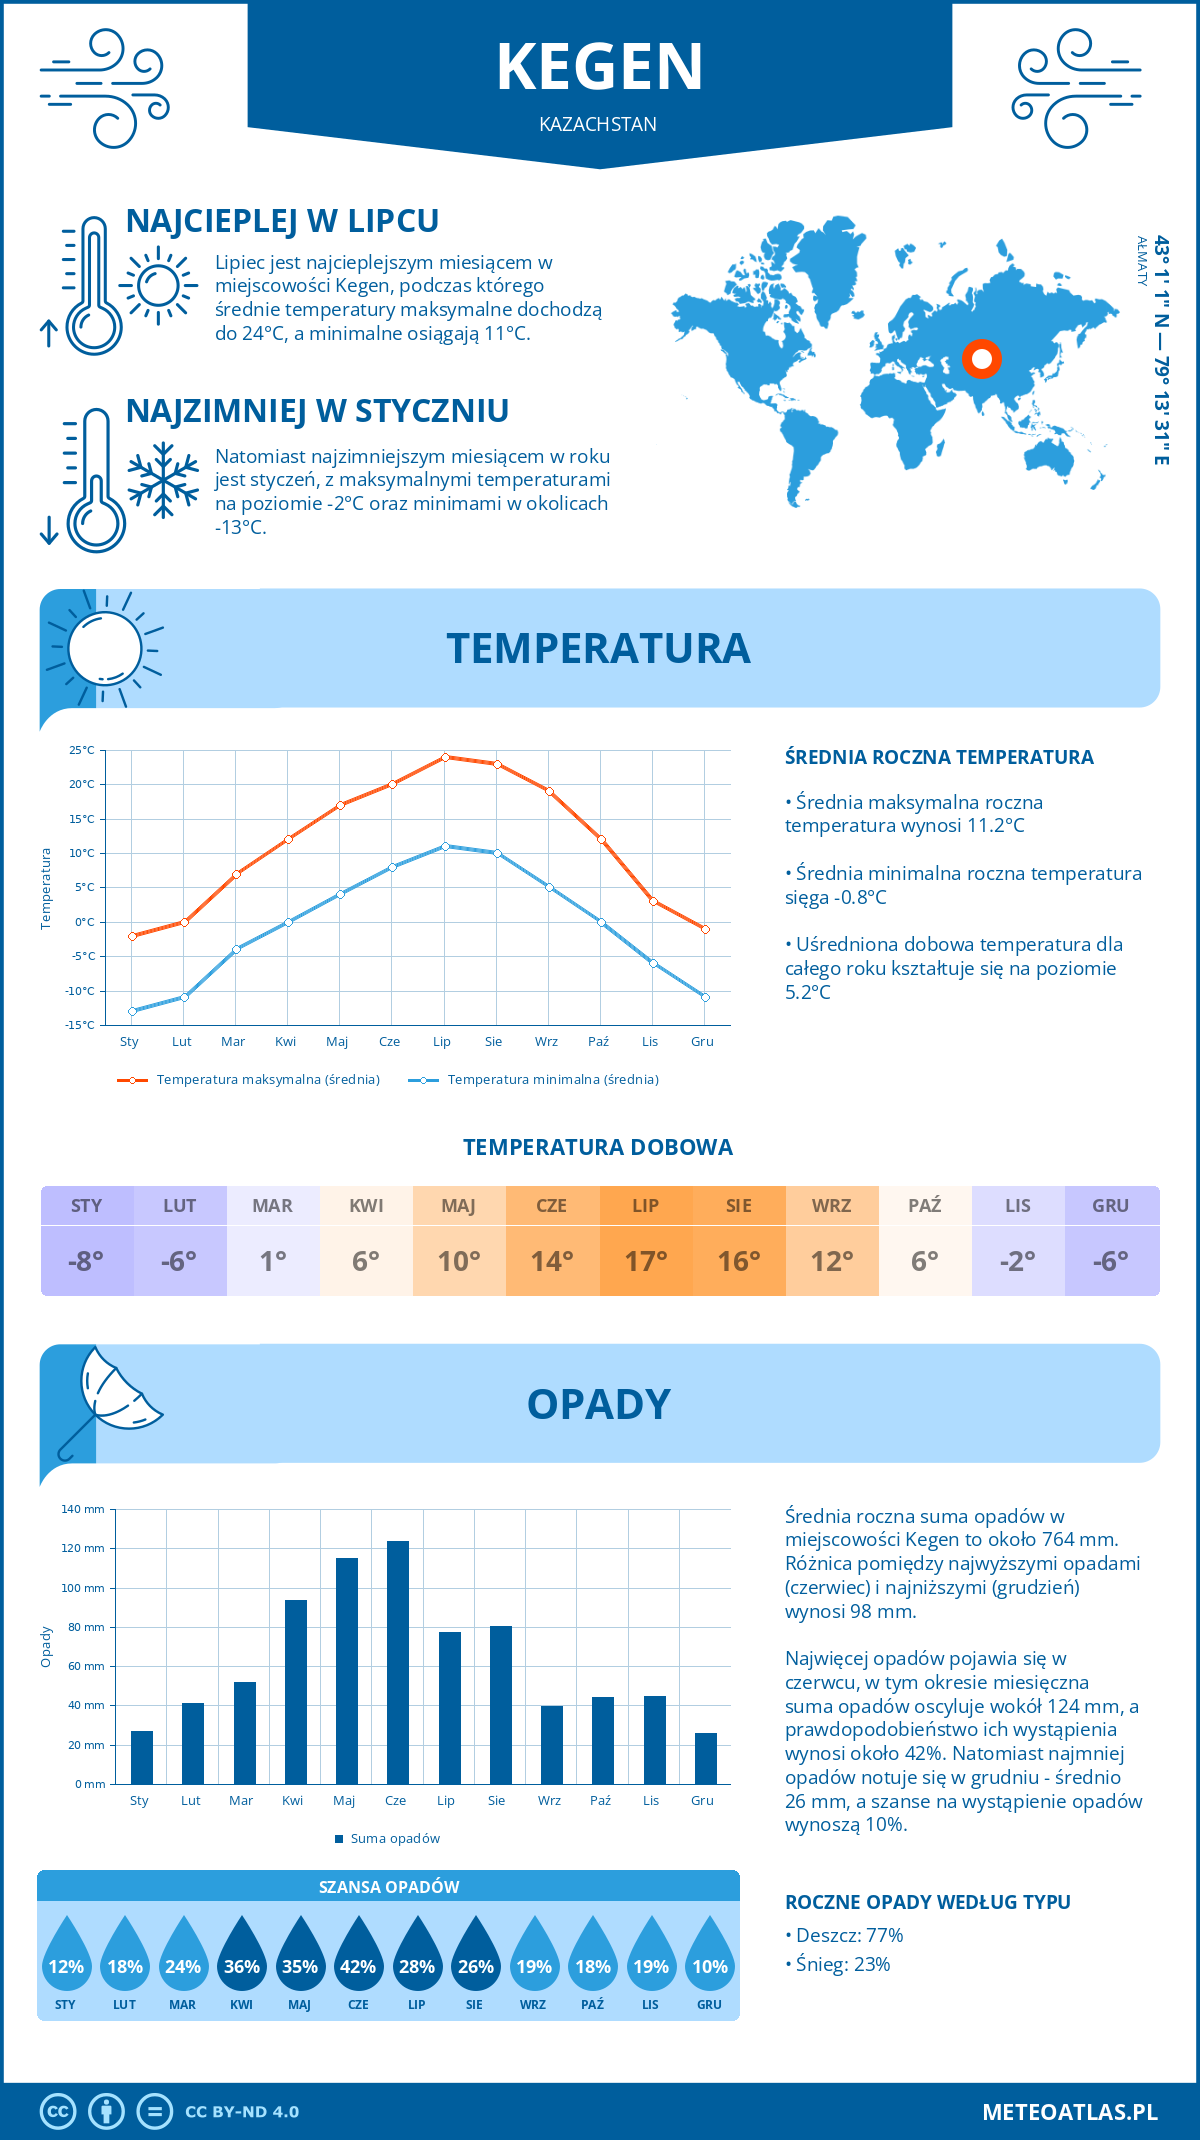 Pogoda Kegen (Kazachstan). Temperatura oraz opady.